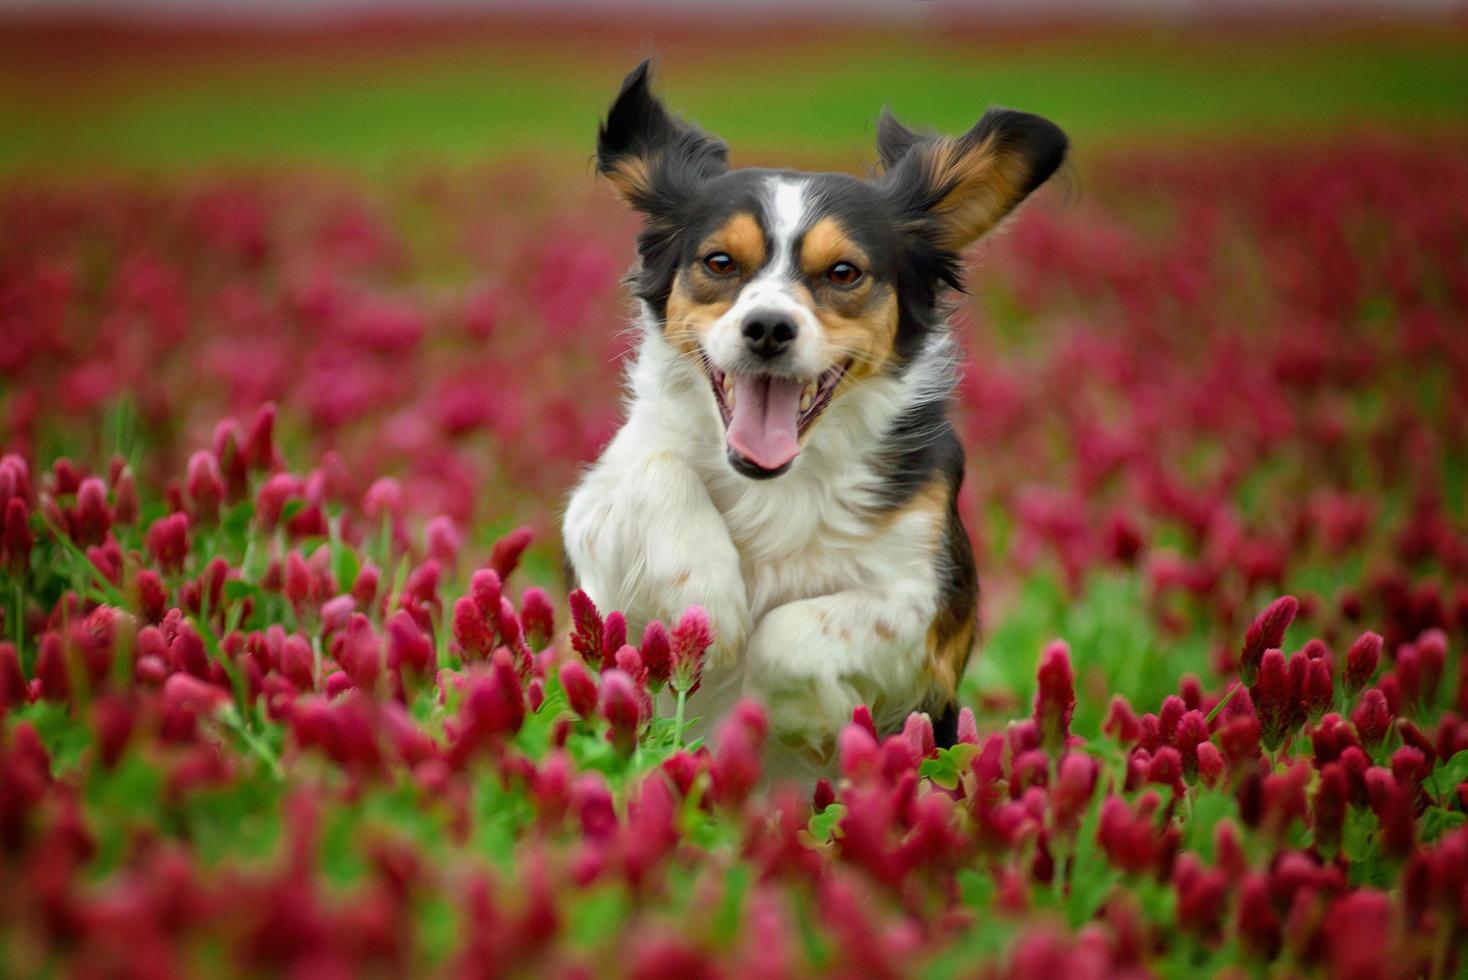 étonnant chien tricolore courant dans le trèfle rouge en fleurs photo